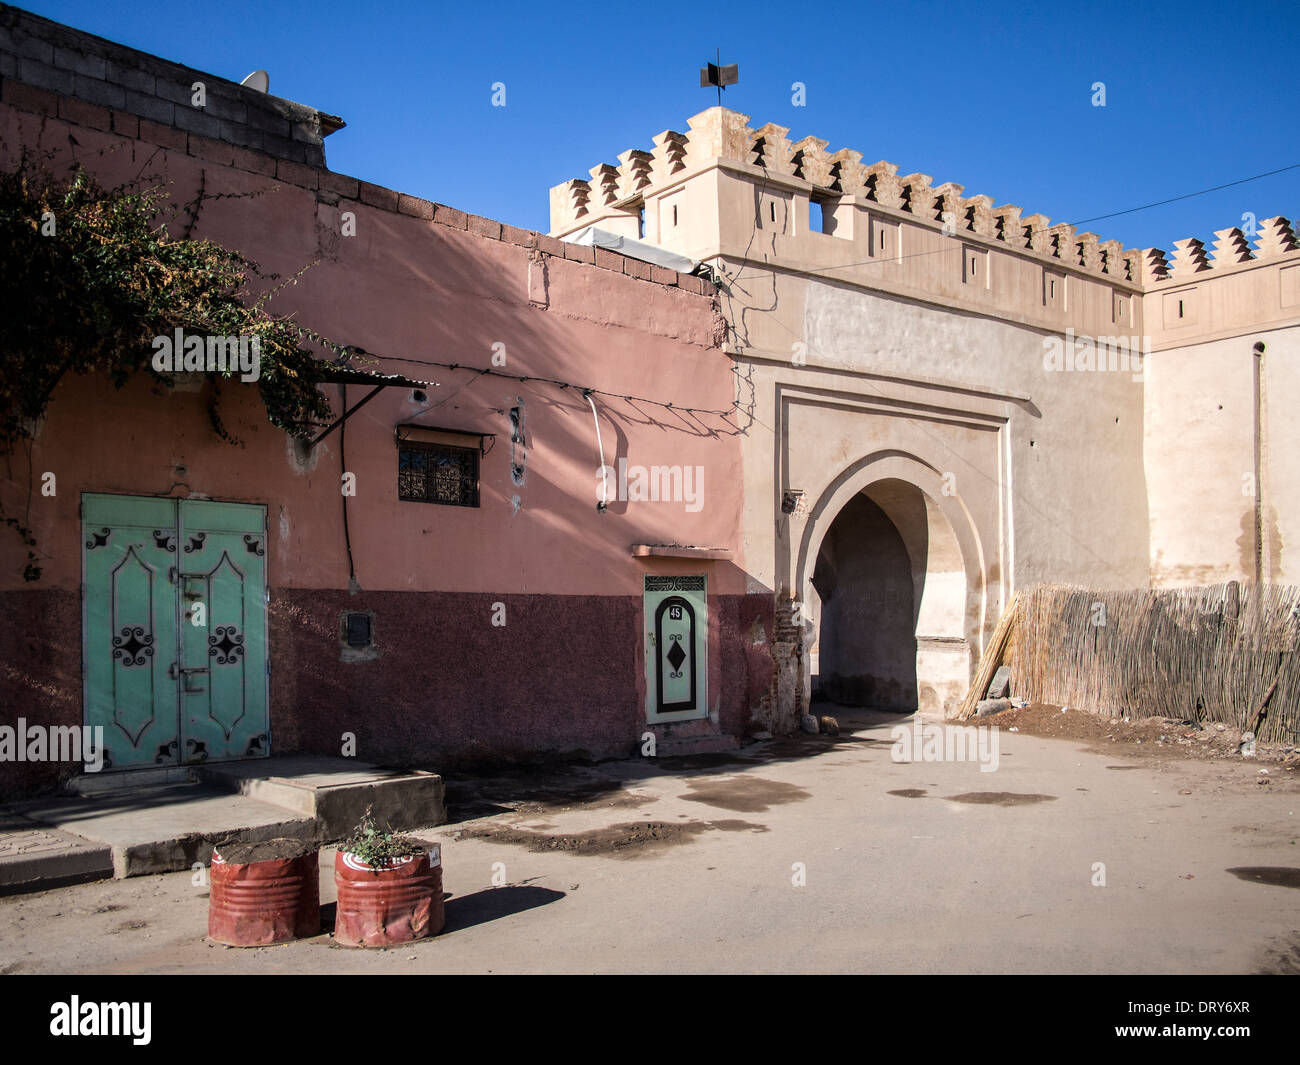 Puerta en la muralla de la ciudad murallas que rodean la Medina, Marrakech (Marrakech) Foto de stock